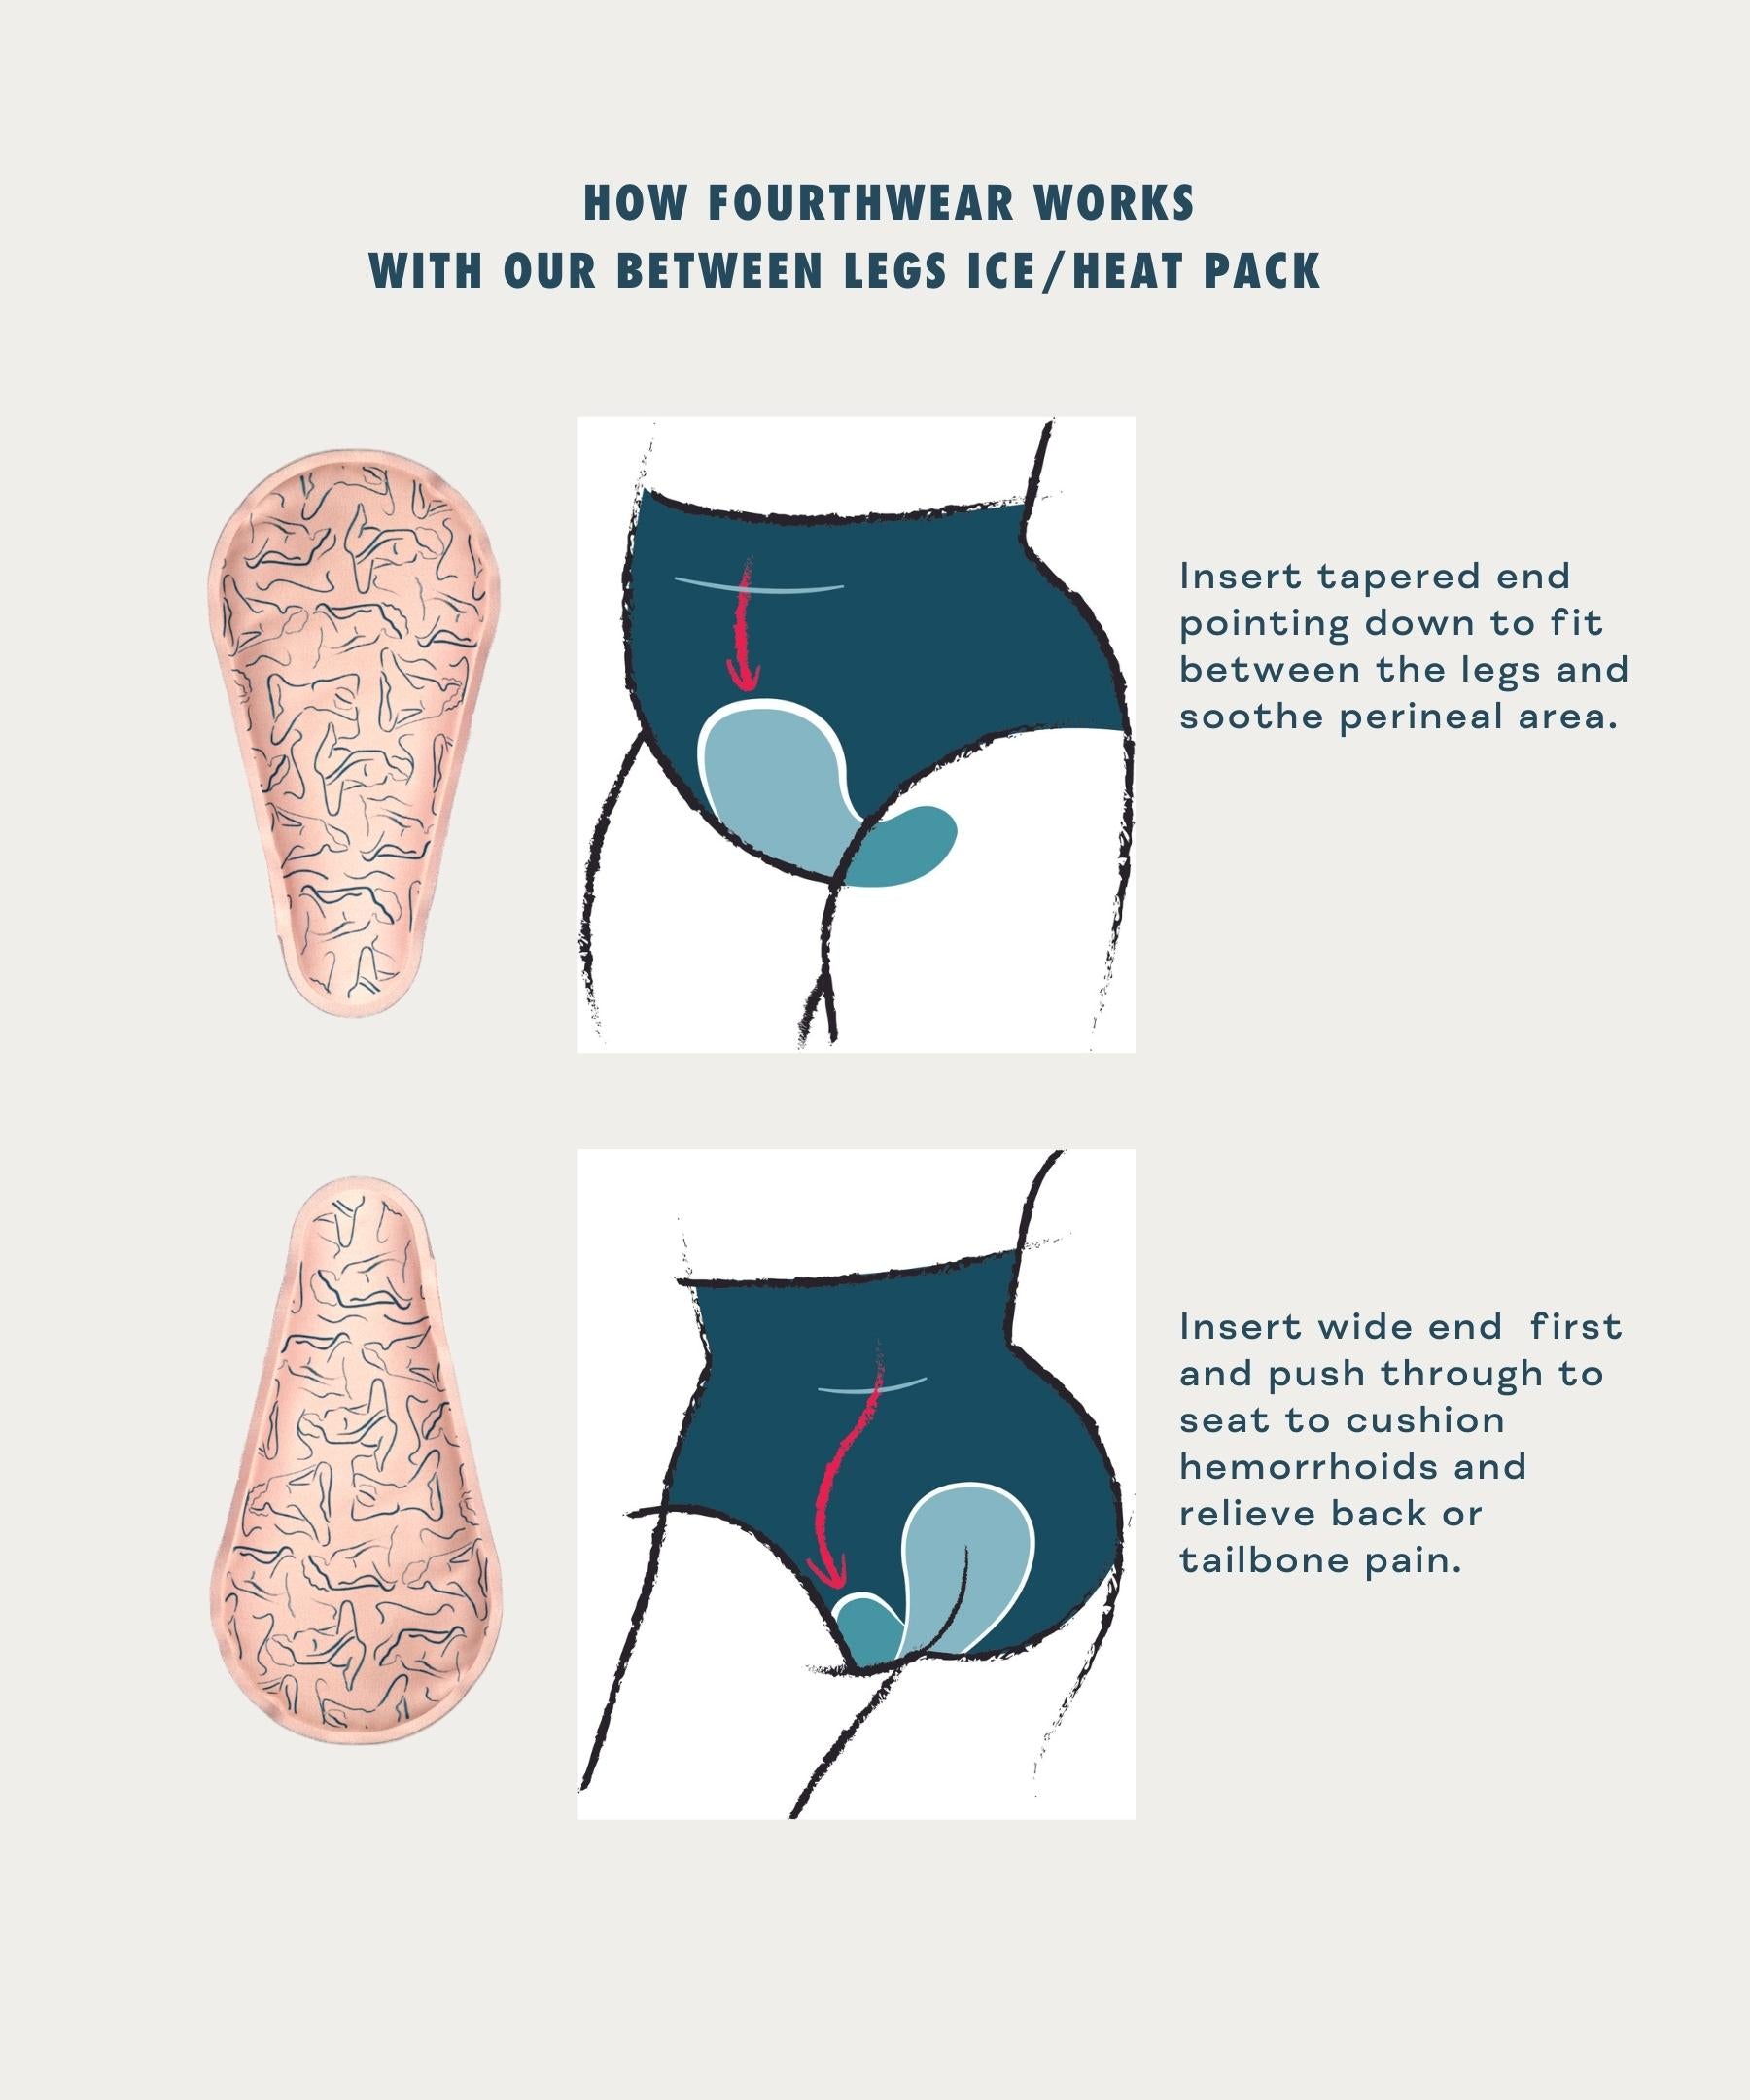 Pregnancy Underwear That Helps Relieve Pelvic Pressure